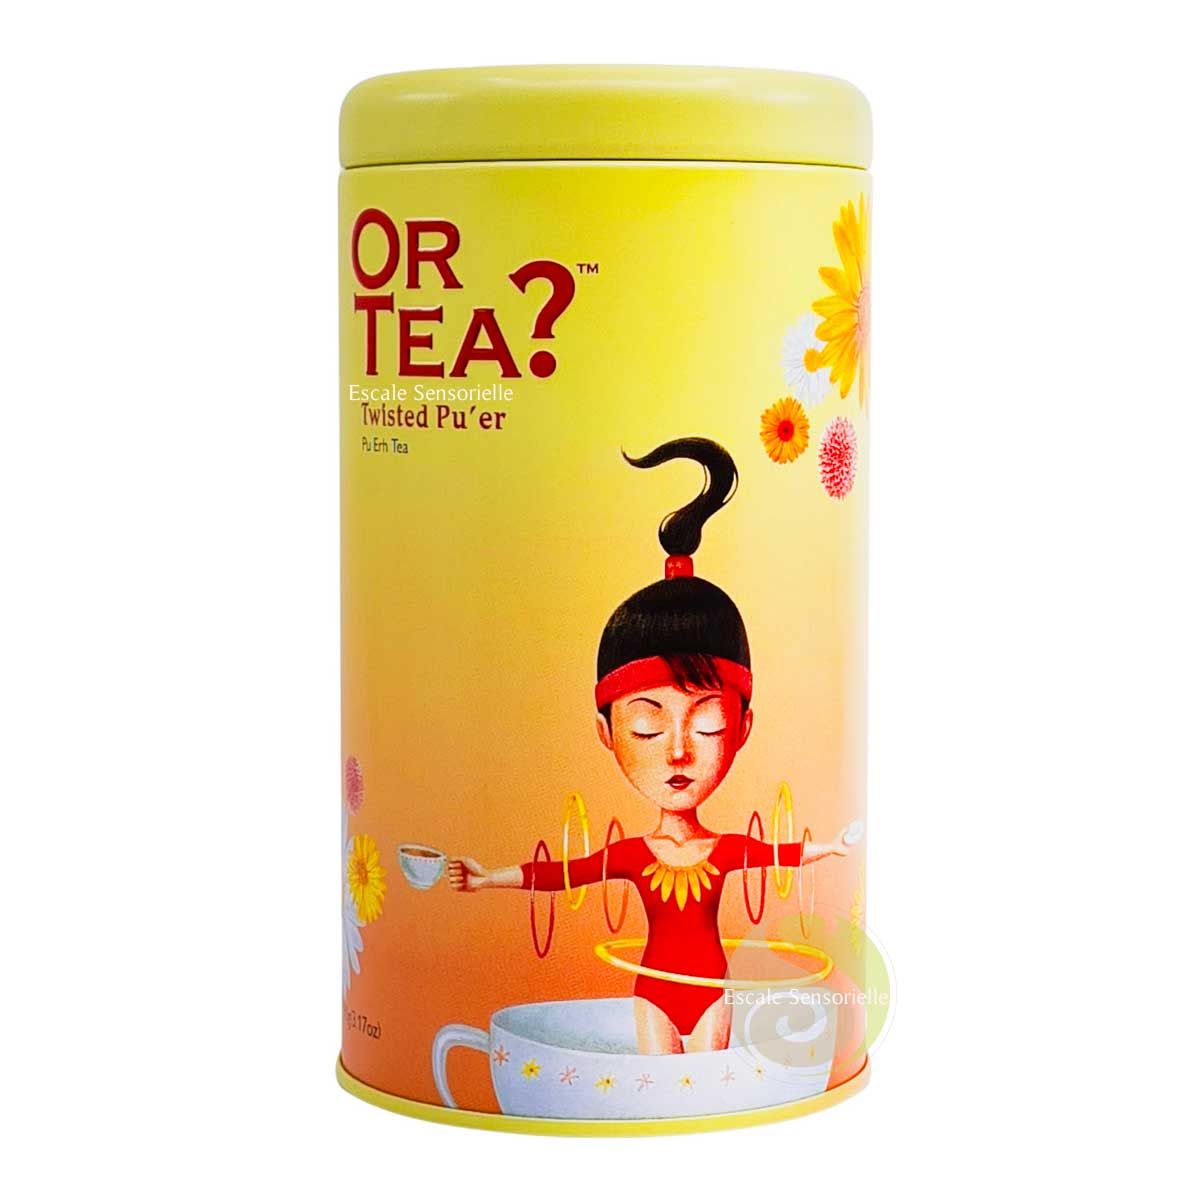 Twisted Pu-er Or Tea? thé noir fermenté  en boite décoré